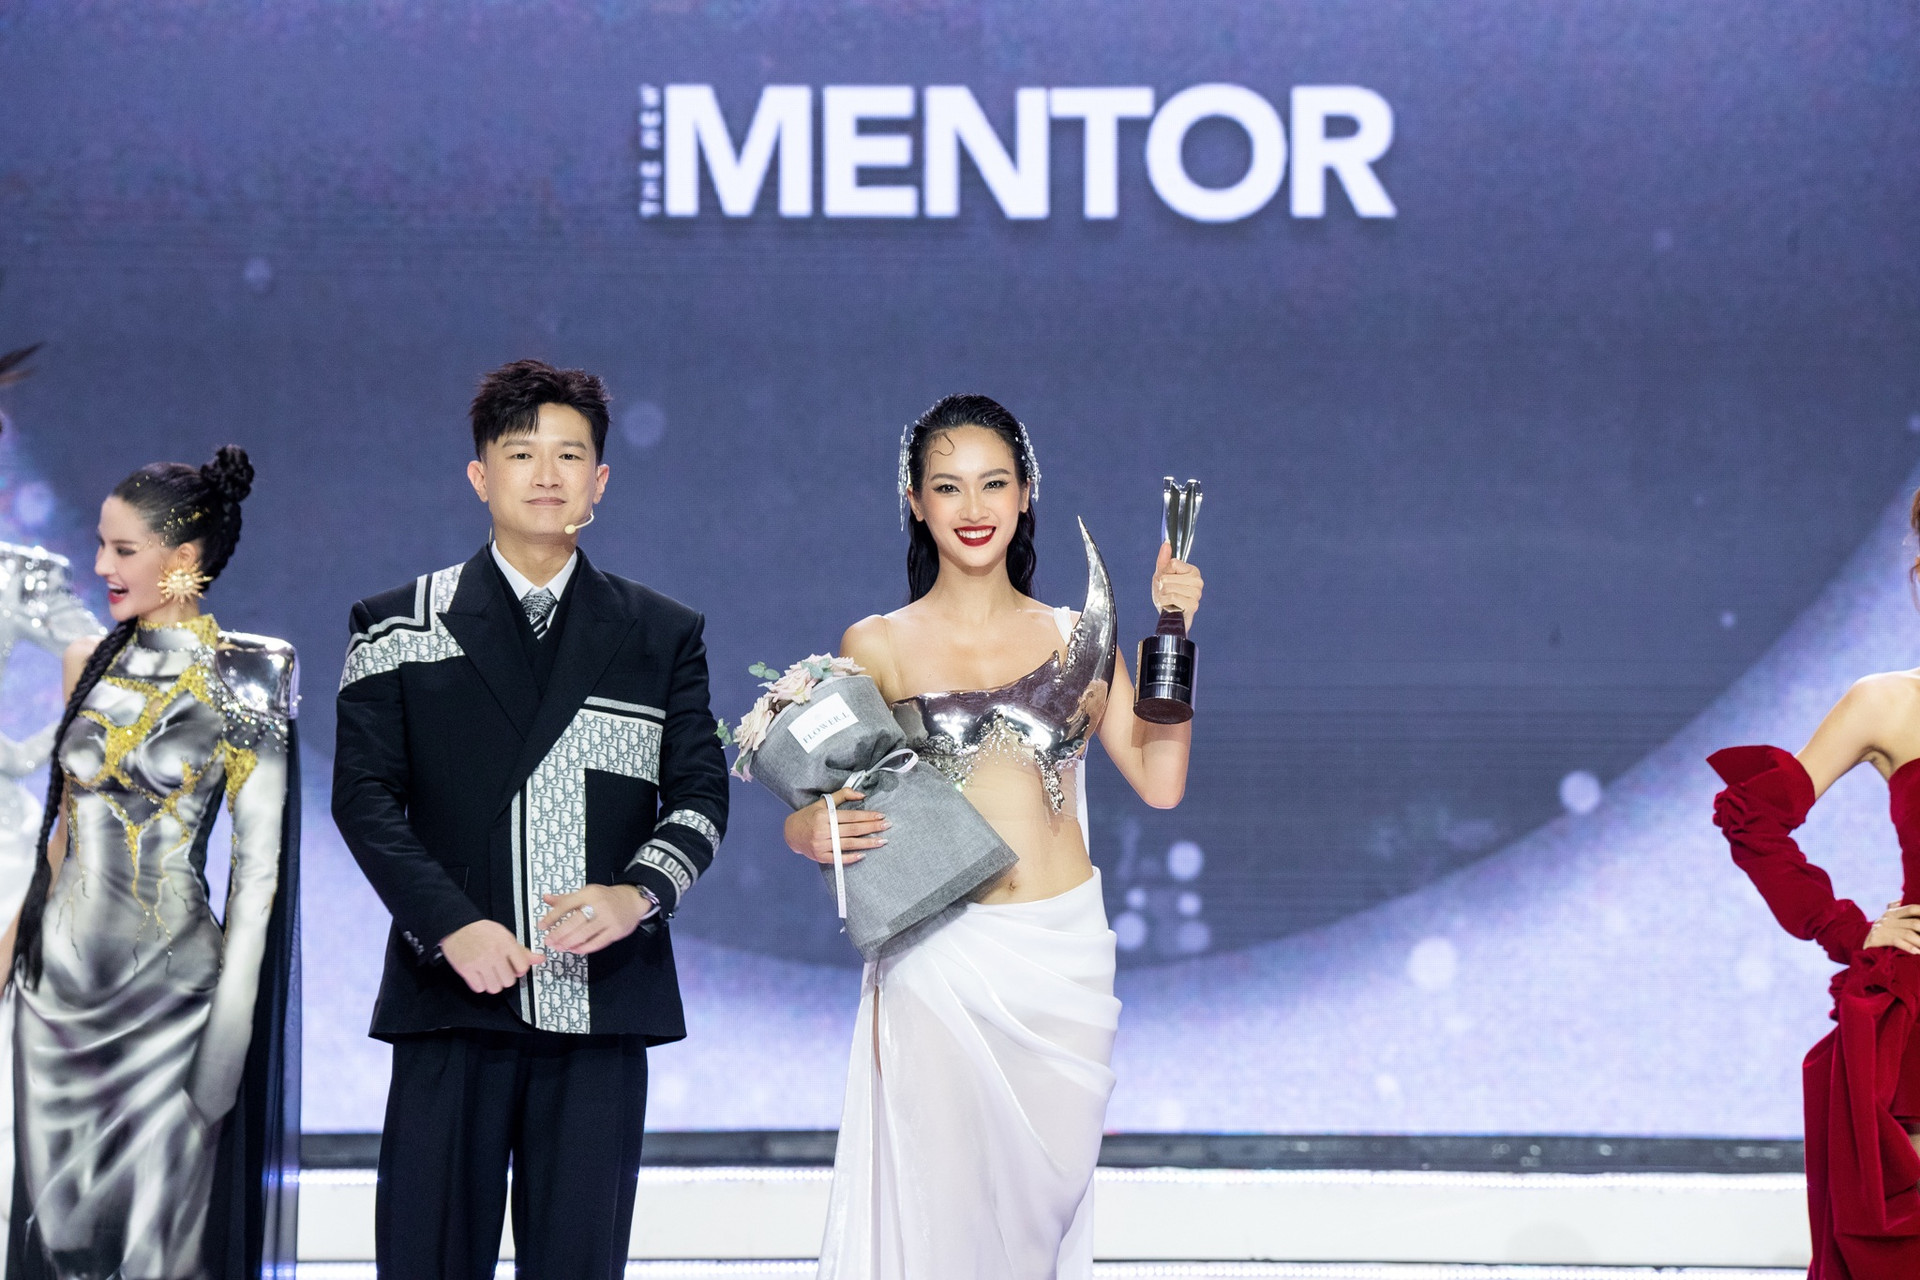 Tranh cãi việc Lê Thu Trang đăng quang The new mentor - 3